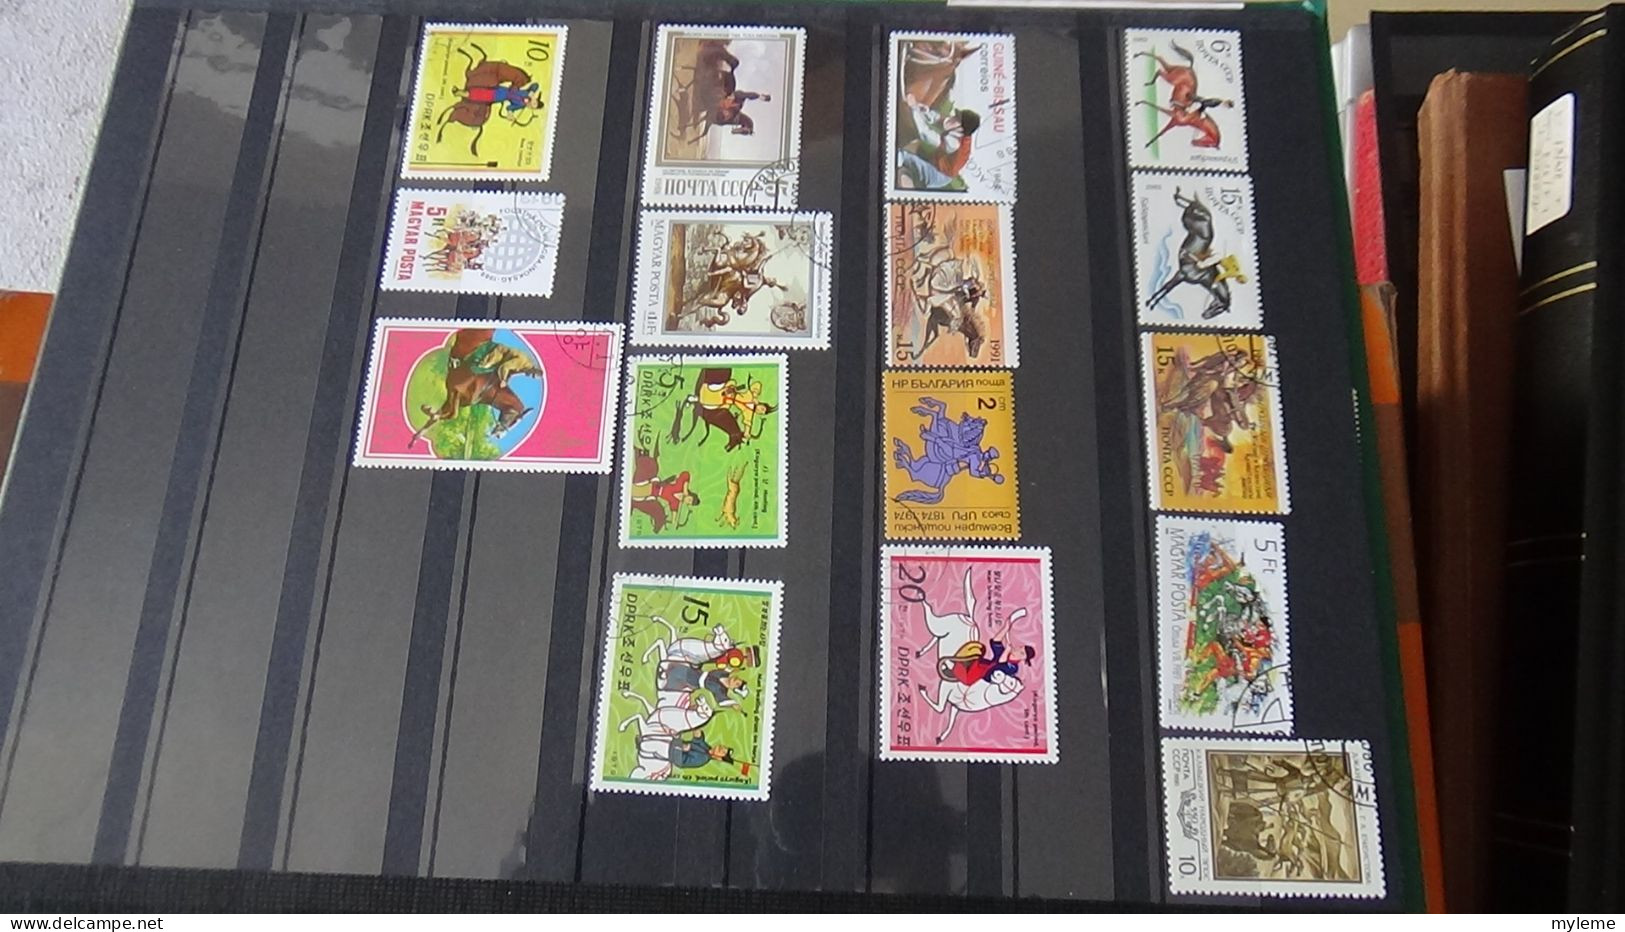 BF11 Ensemble de timbres de divers pays + plaquette de France **. Cote sympa.  A saisir !!!.